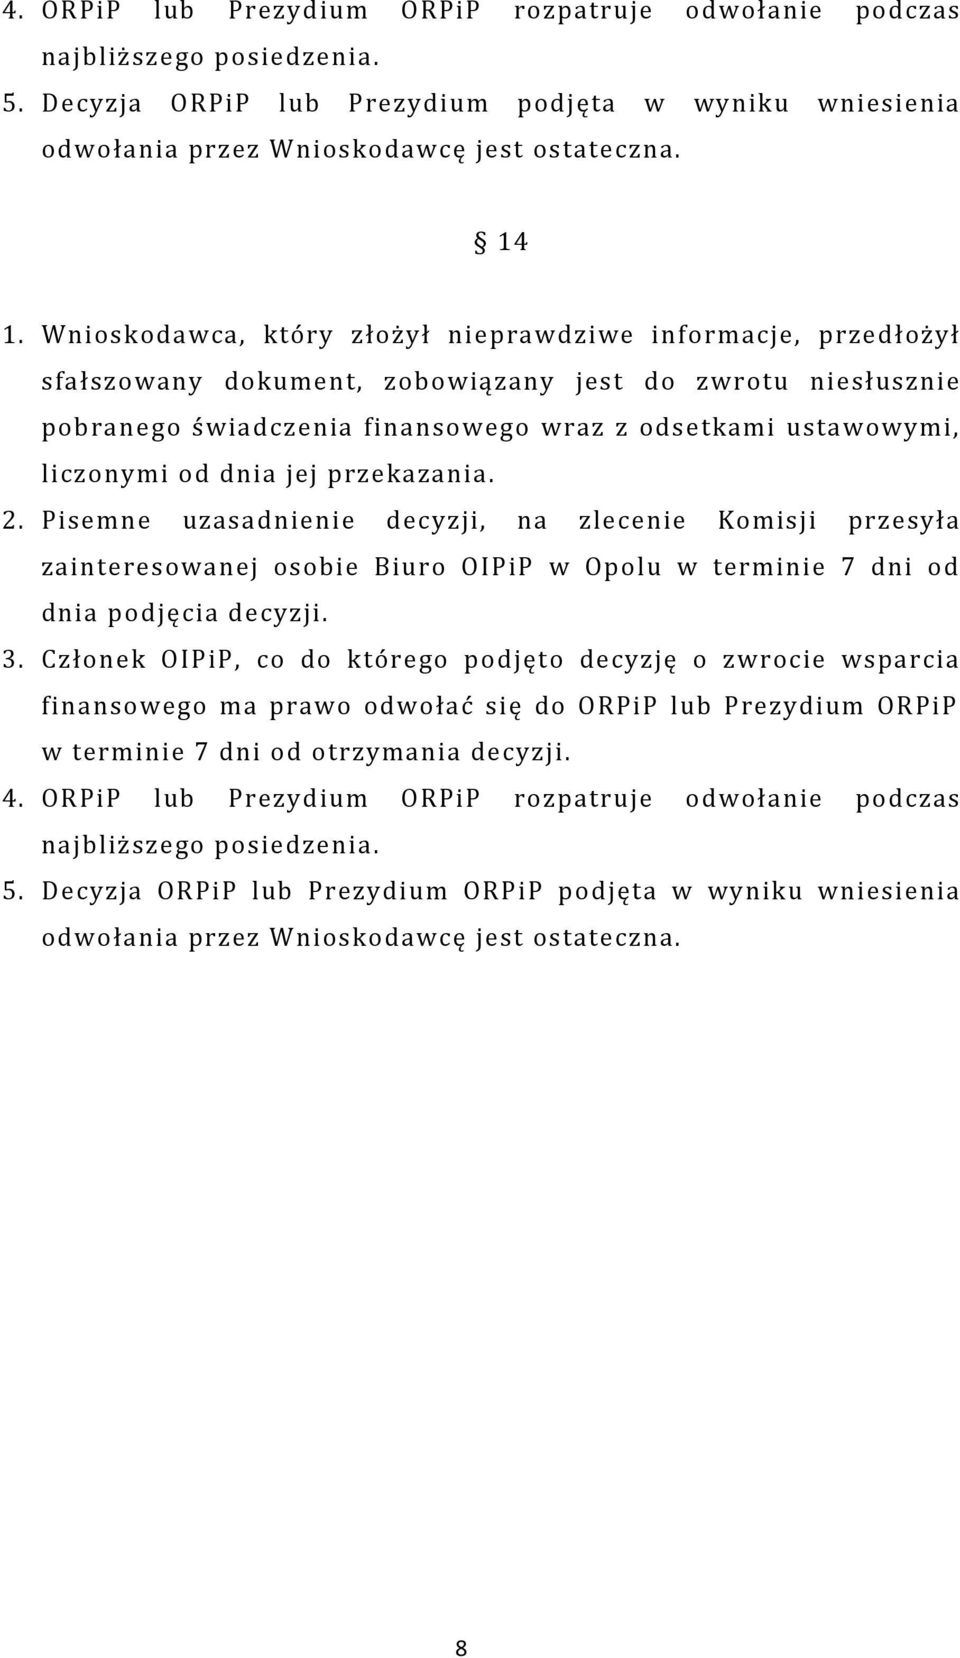 dnia jej przekazania. 2. Pisemne uzasadnienie decyzji, na zlecenie Komisji przesyła zainteresowanej osobie Biuro OIPiP w Opolu w terminie 7 dni od dnia podjęcia decyzji. 3.